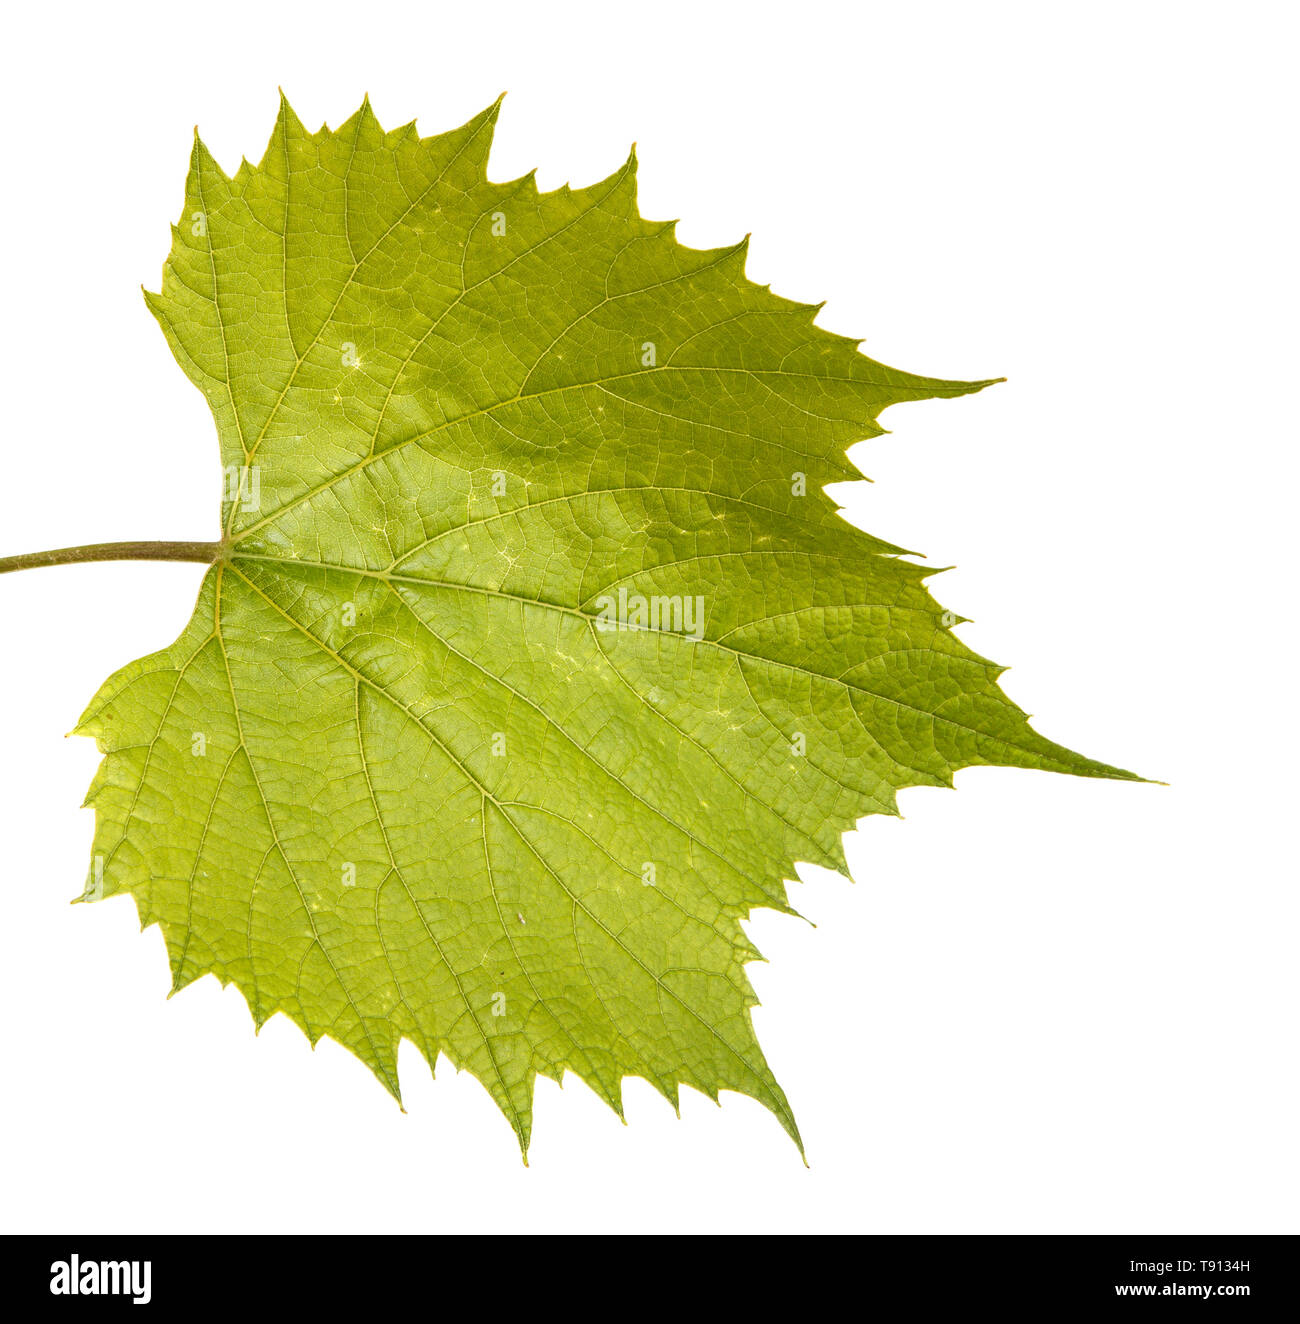 Les feuilles de raisin sur la vigne. Isolated on white Banque D'Images